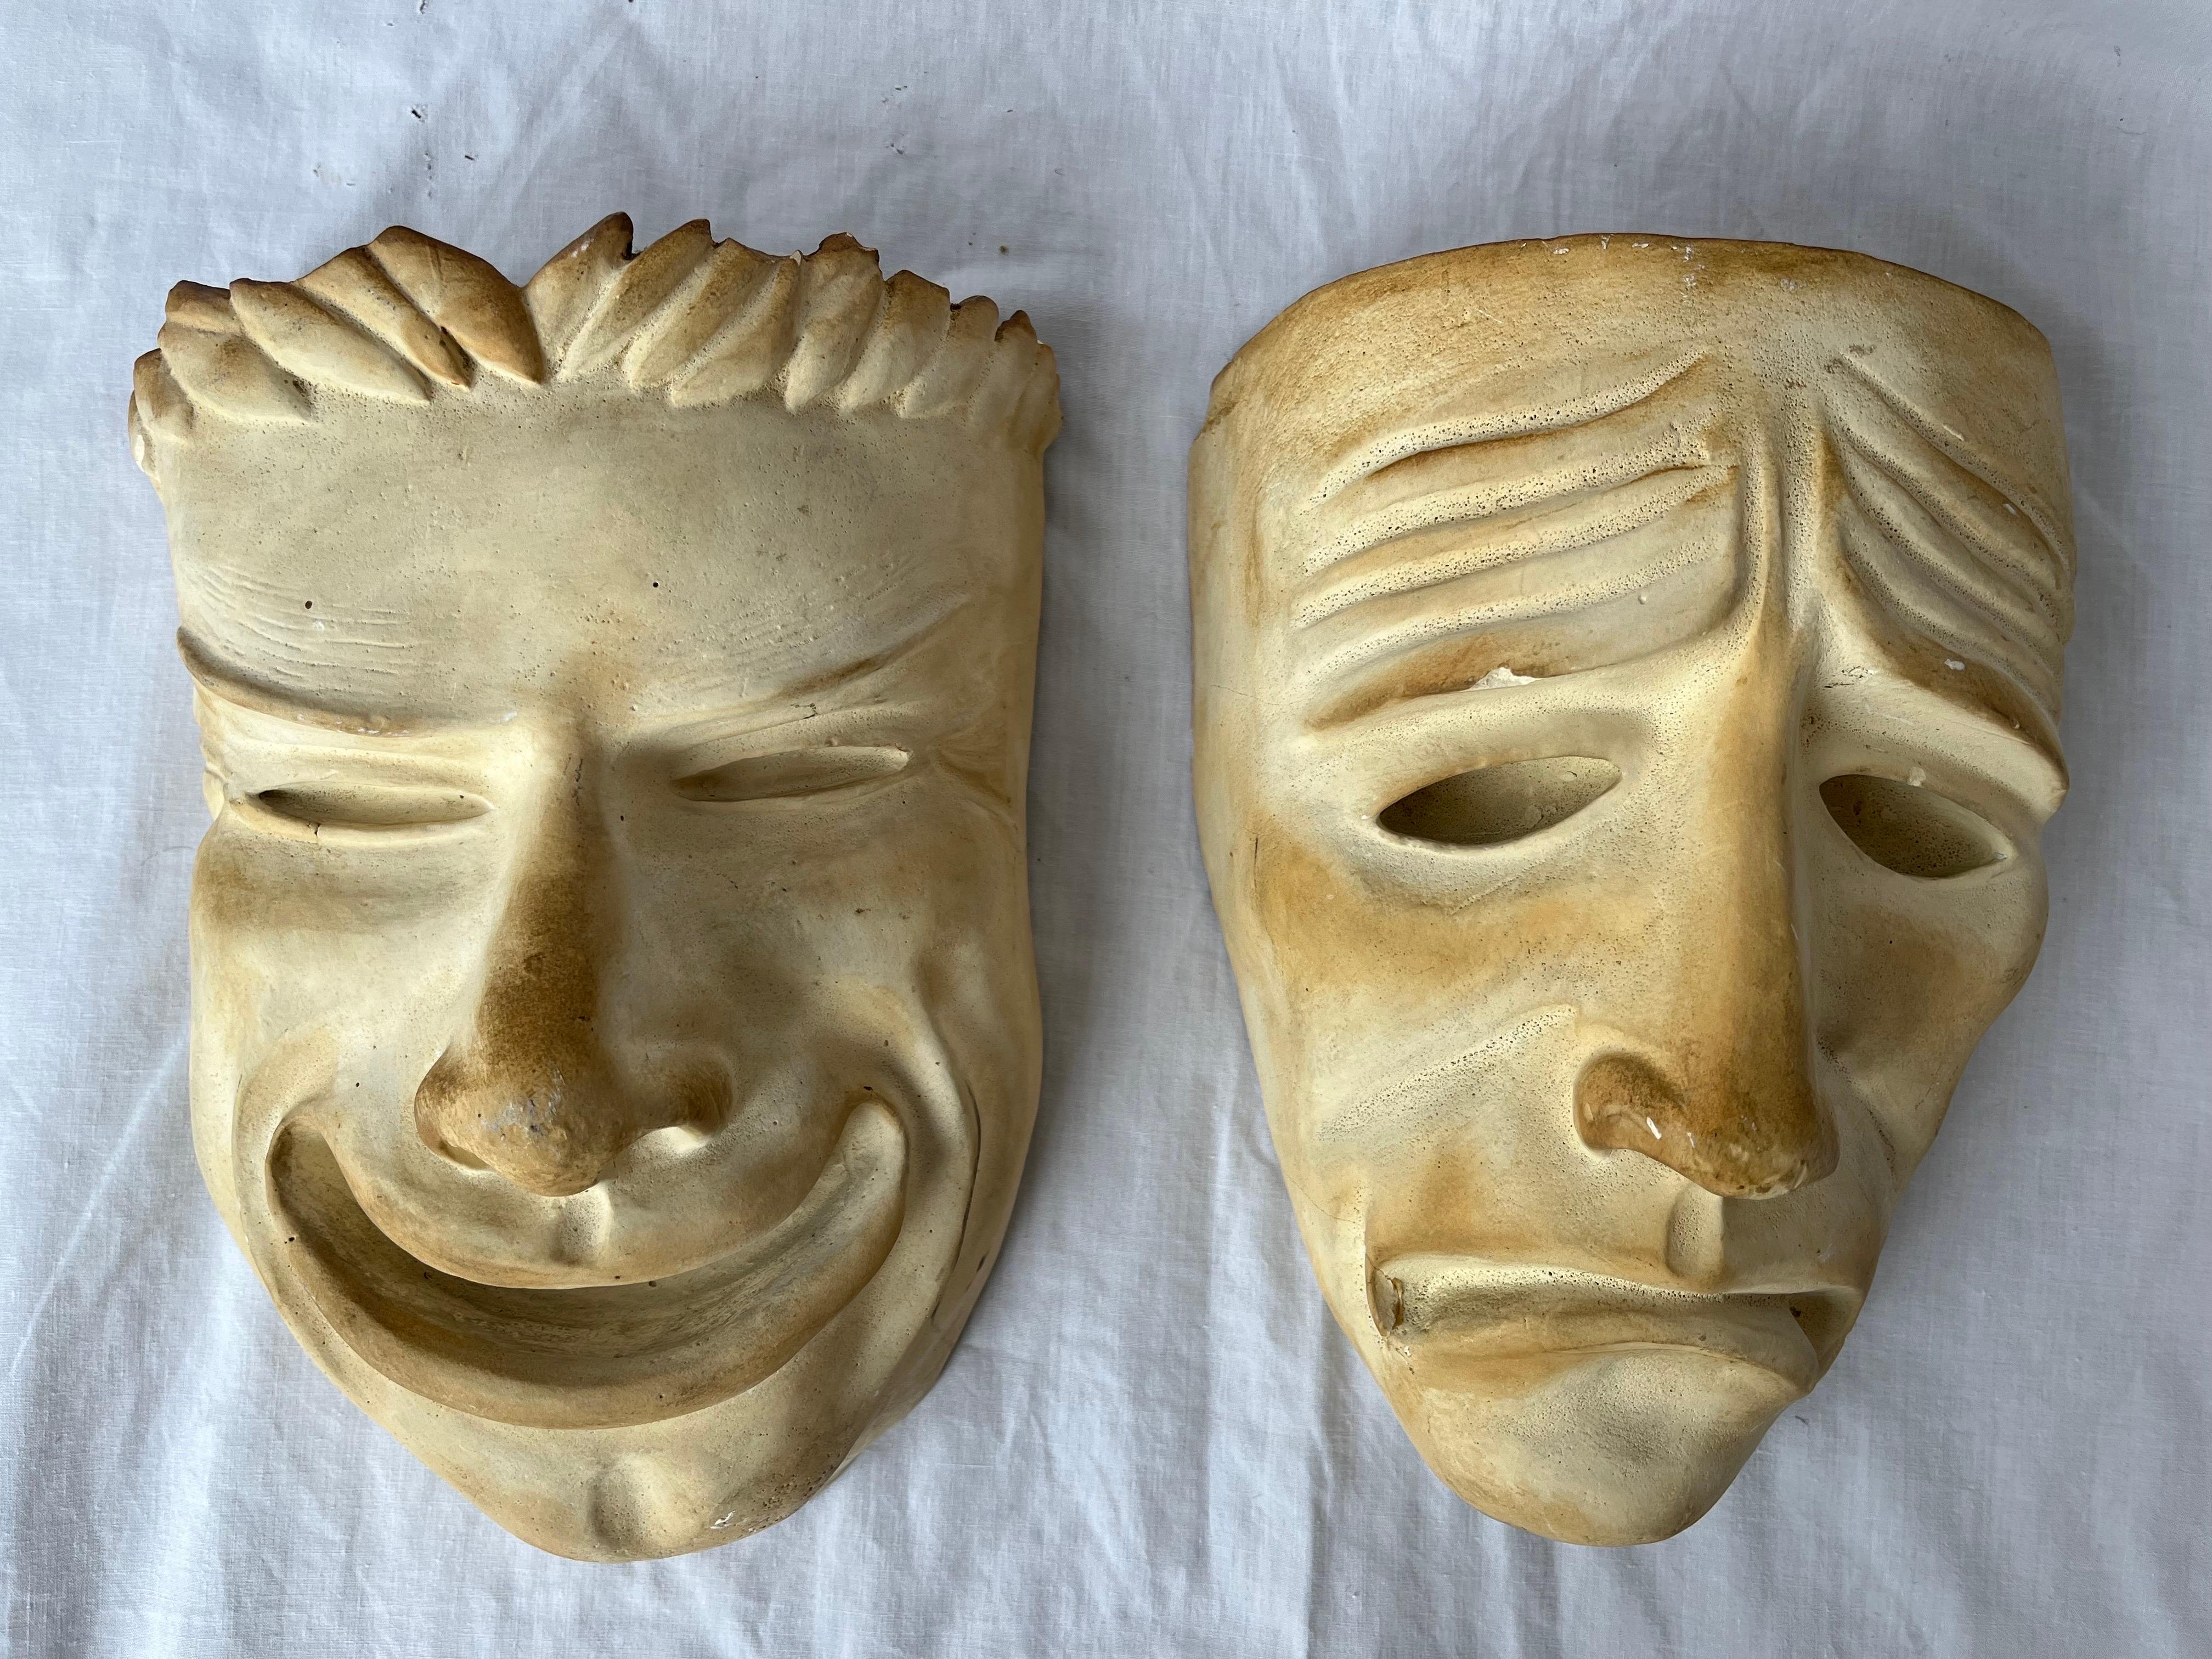 Ein fast antikes Paar Theater-Masken aus Gips für Komödie und Tragödie. Mit unglaublichen Details, ausdrucksstarken Gesichtern und wundervollen Maßstäben weckt dieses Duo alle Emotionen. Die Gipsformen haben alle eine schöne Patina. An den